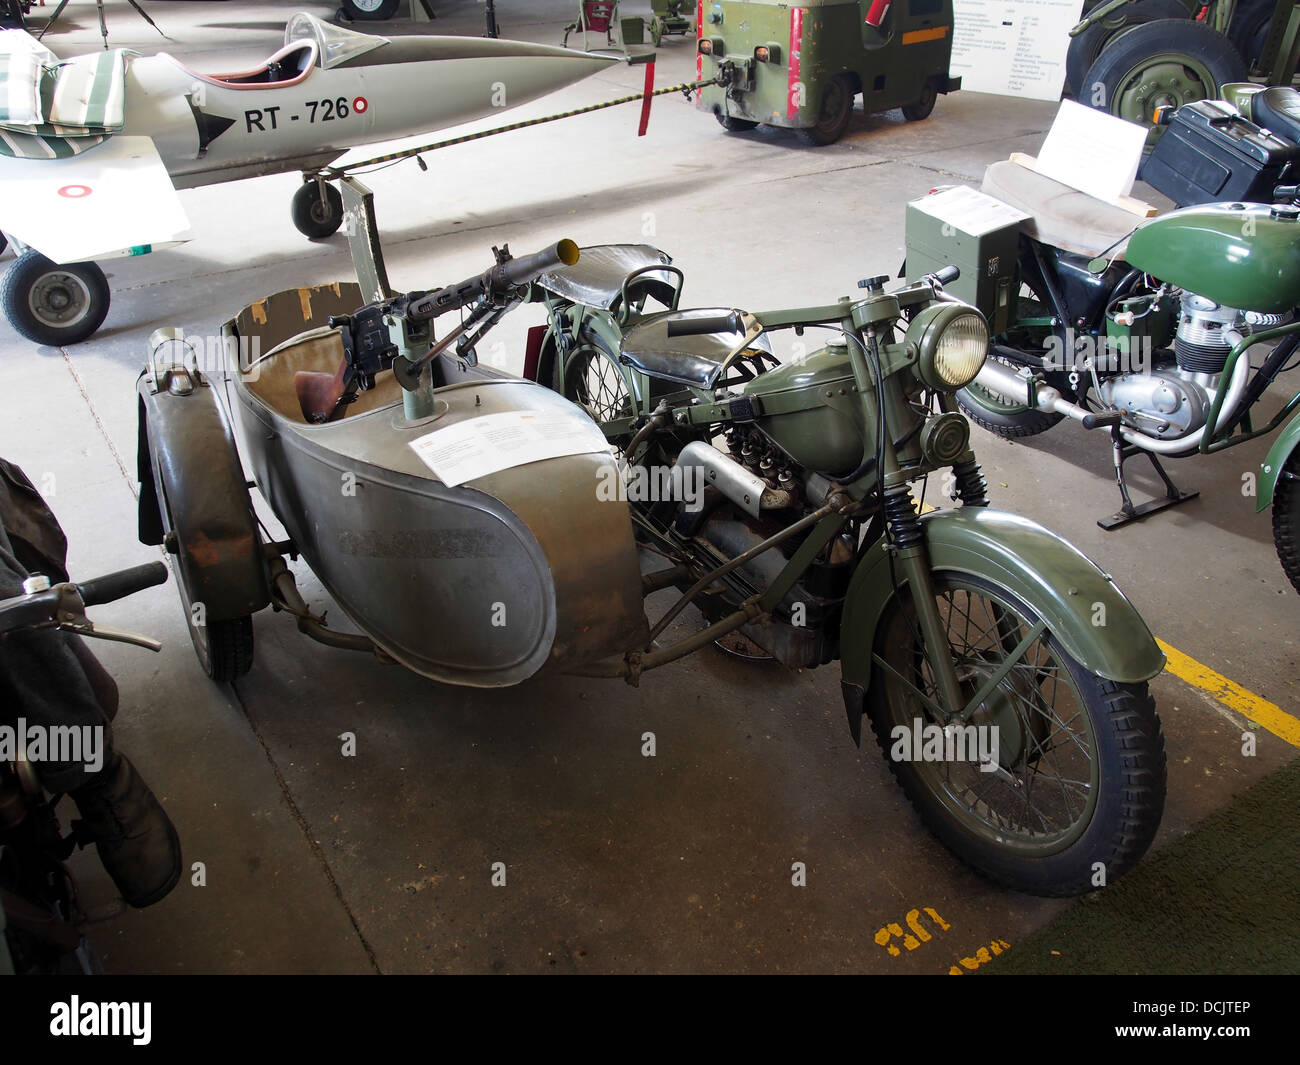 Machine Gun Motorcycle Stockfotos und -bilder Kaufen - Alamy